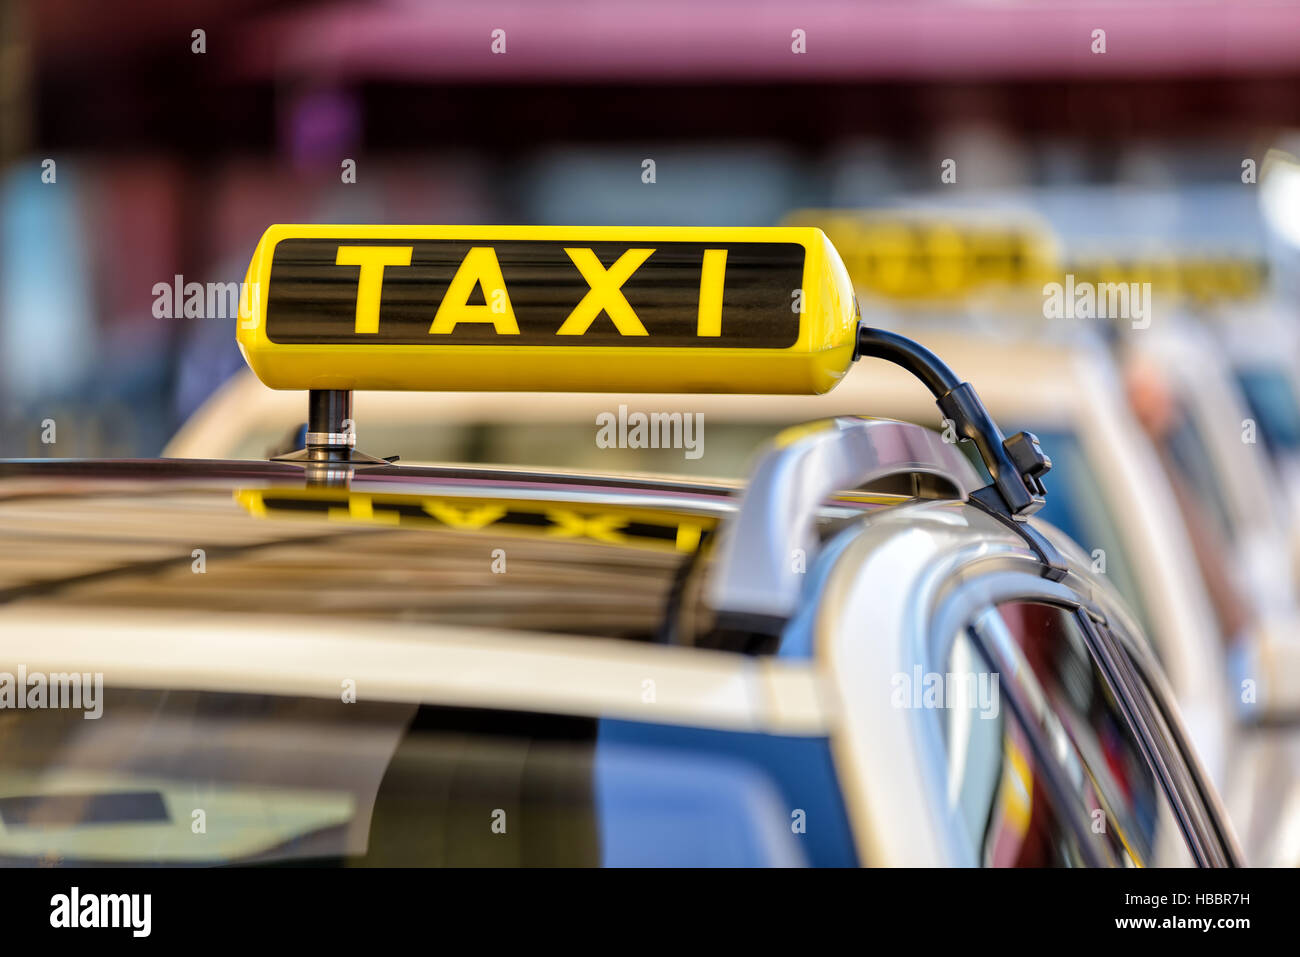 Taxi-Schild Auf Dem Auto Mit Kopierplatz Mit Bügelampe Stockbild - Bild von  leuchte, rollen: 164441963